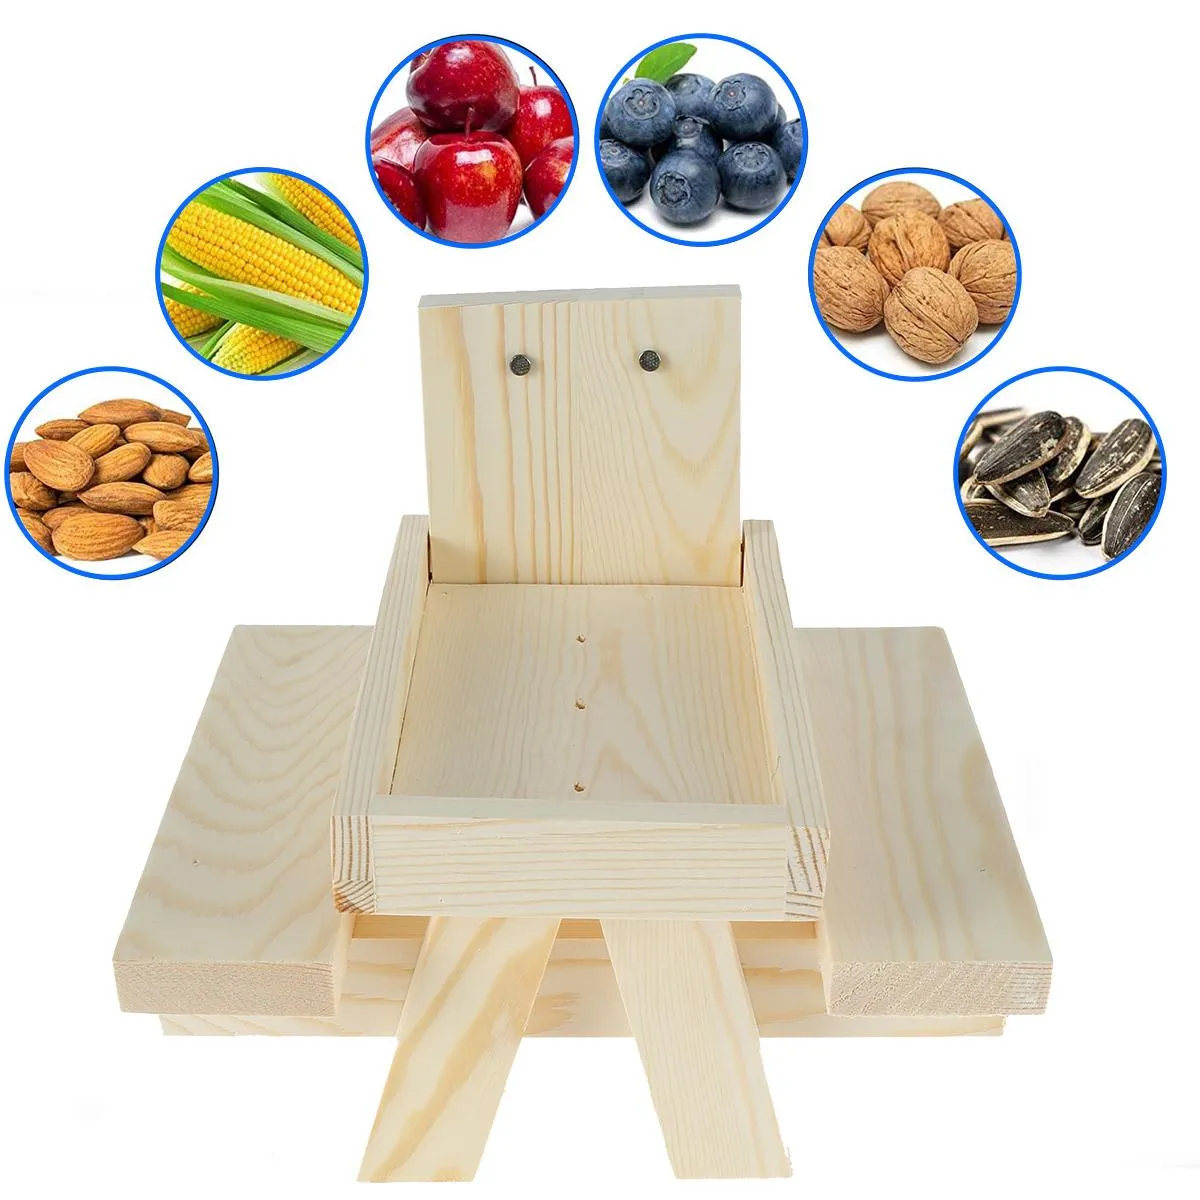 Liefert Holz Eichhörnchen Picknick Tisch Haustiere Lebensmittel Lagerung  Werkzeuge Eichhörnchen Picknicks Tisch Feeder Spielzeug Dekoration Hängende  Dekoration Spielzeug Von 15,4 €